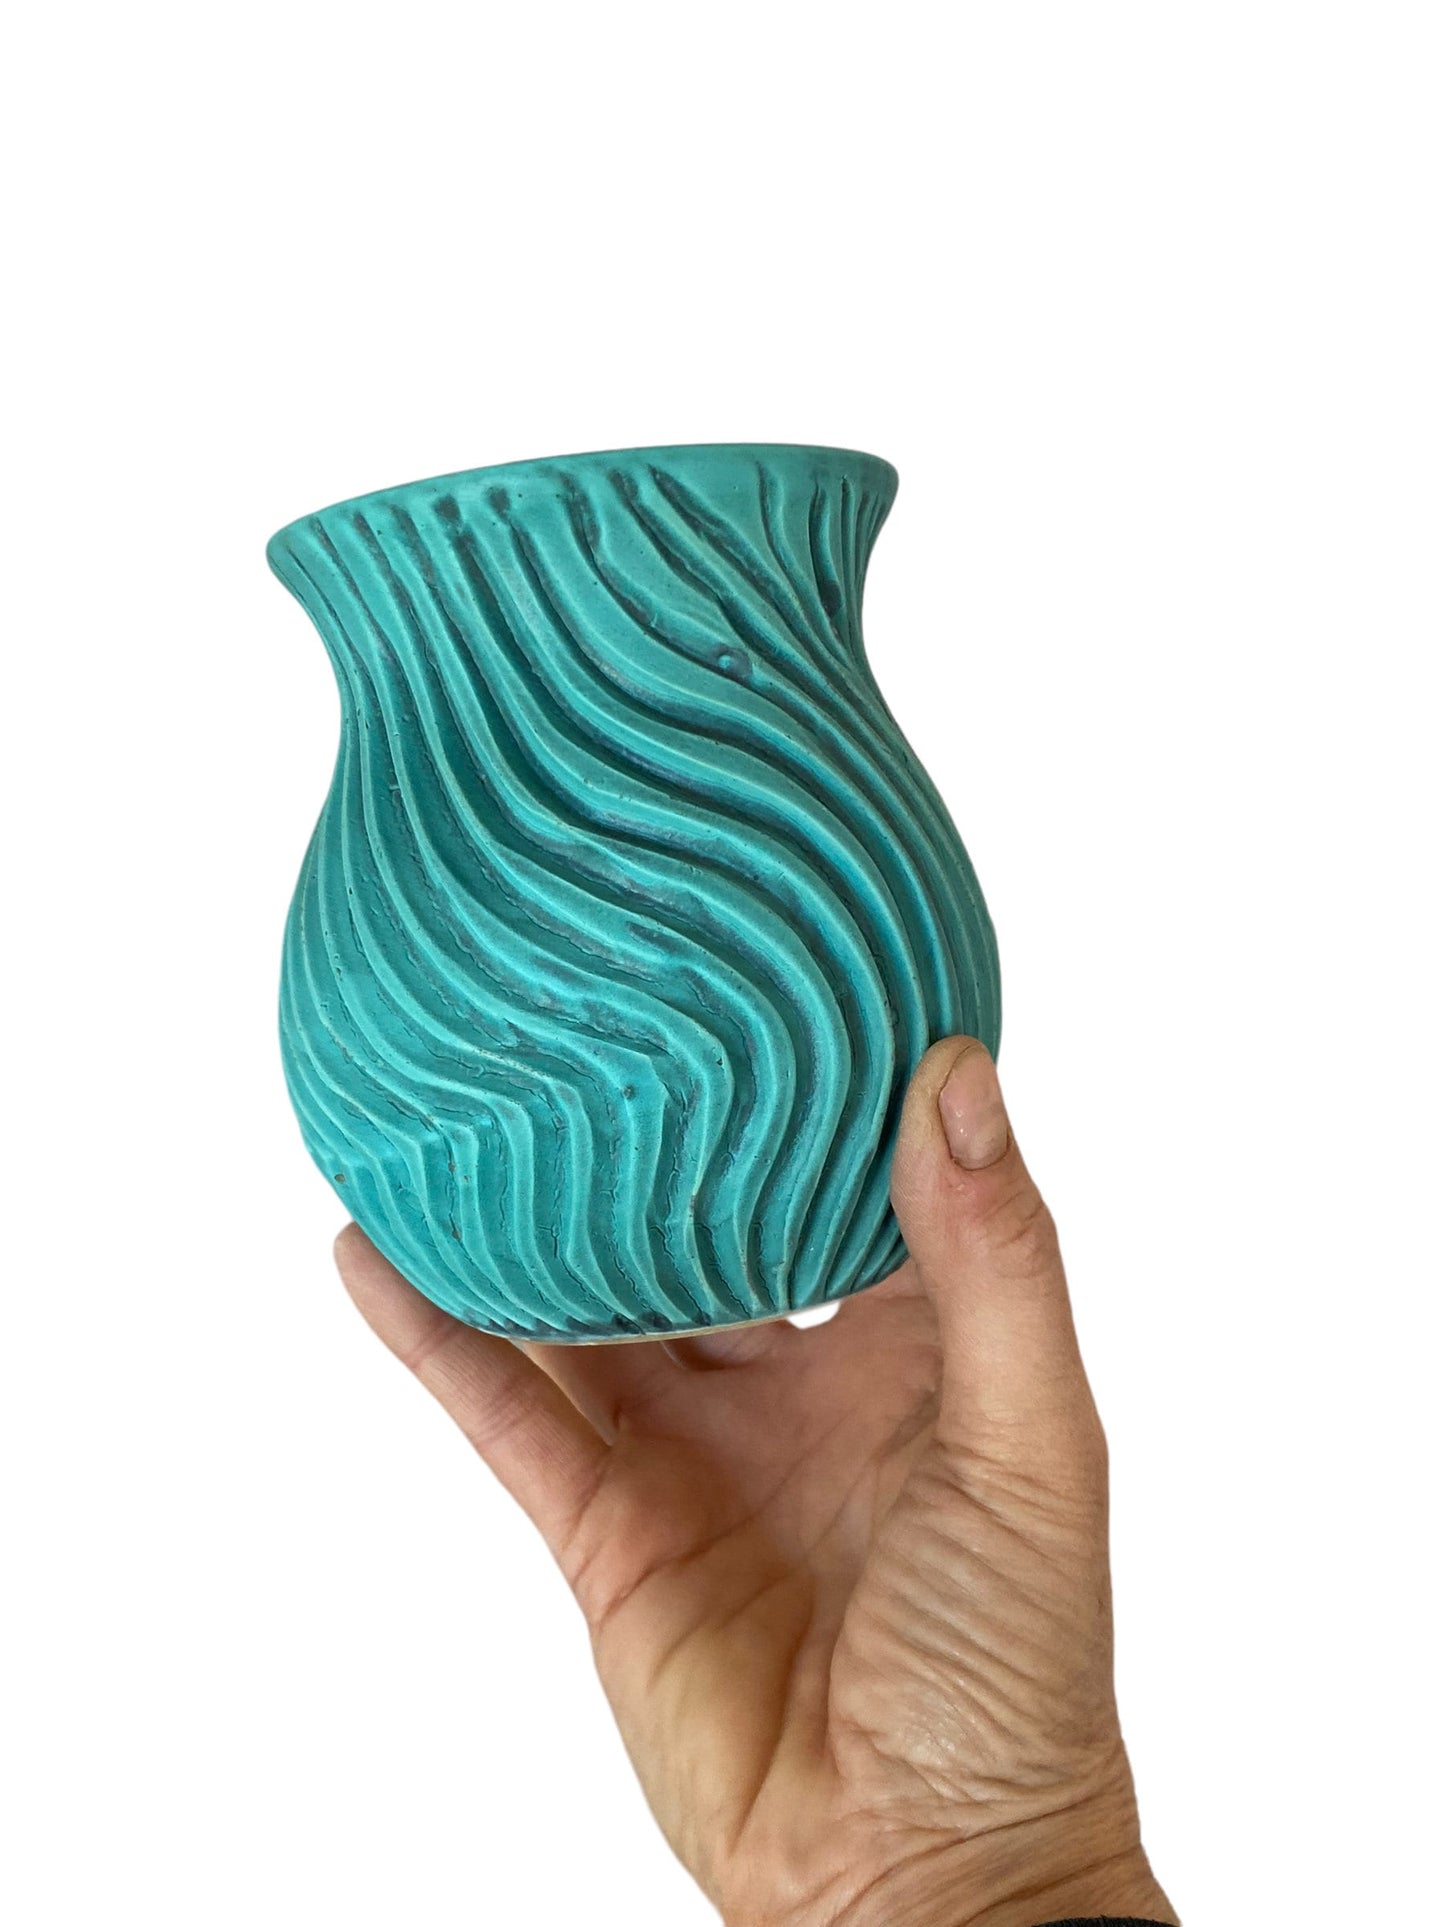 Matte Bronze Flower Vase - Pottery Flower Vase - Contemporary Ceramic Pottery Vase - Modern Vases